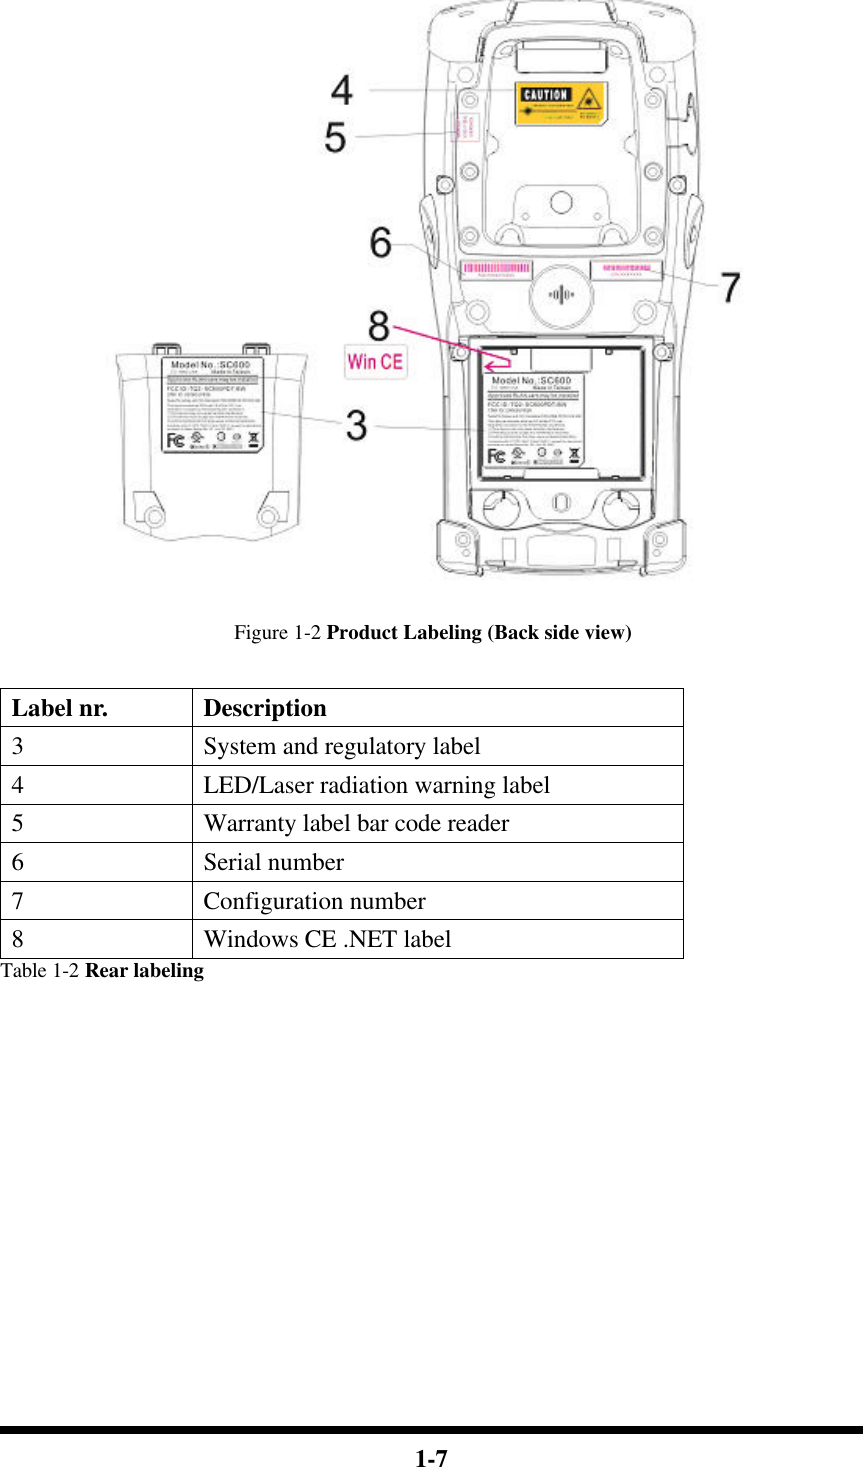  1-7   Figure 1-2 Product Labeling (Back side view)  Label nr. Description 3  System and regulatory label 4  LED/Laser radiation warning label 5  Warranty label bar code reader 6  Serial number 7  Configuration number 8  Windows CE .NET label Table 1-2 Rear labeling            